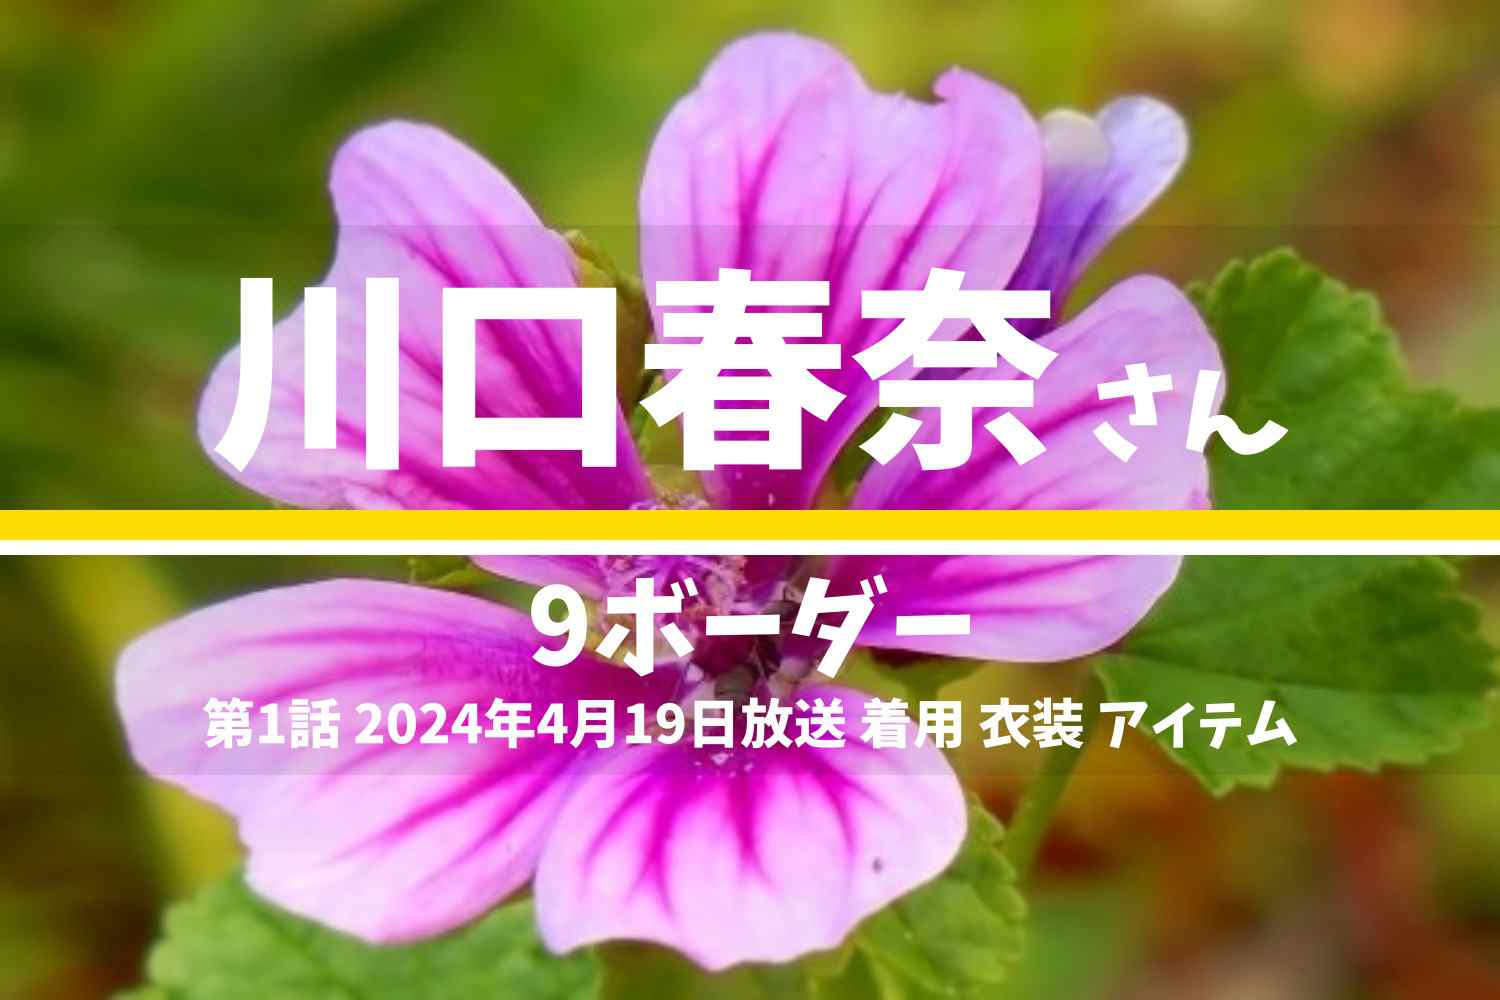 9ボーダー 川口春奈さん テレビドラマ 衣装 2024年4月19日放送